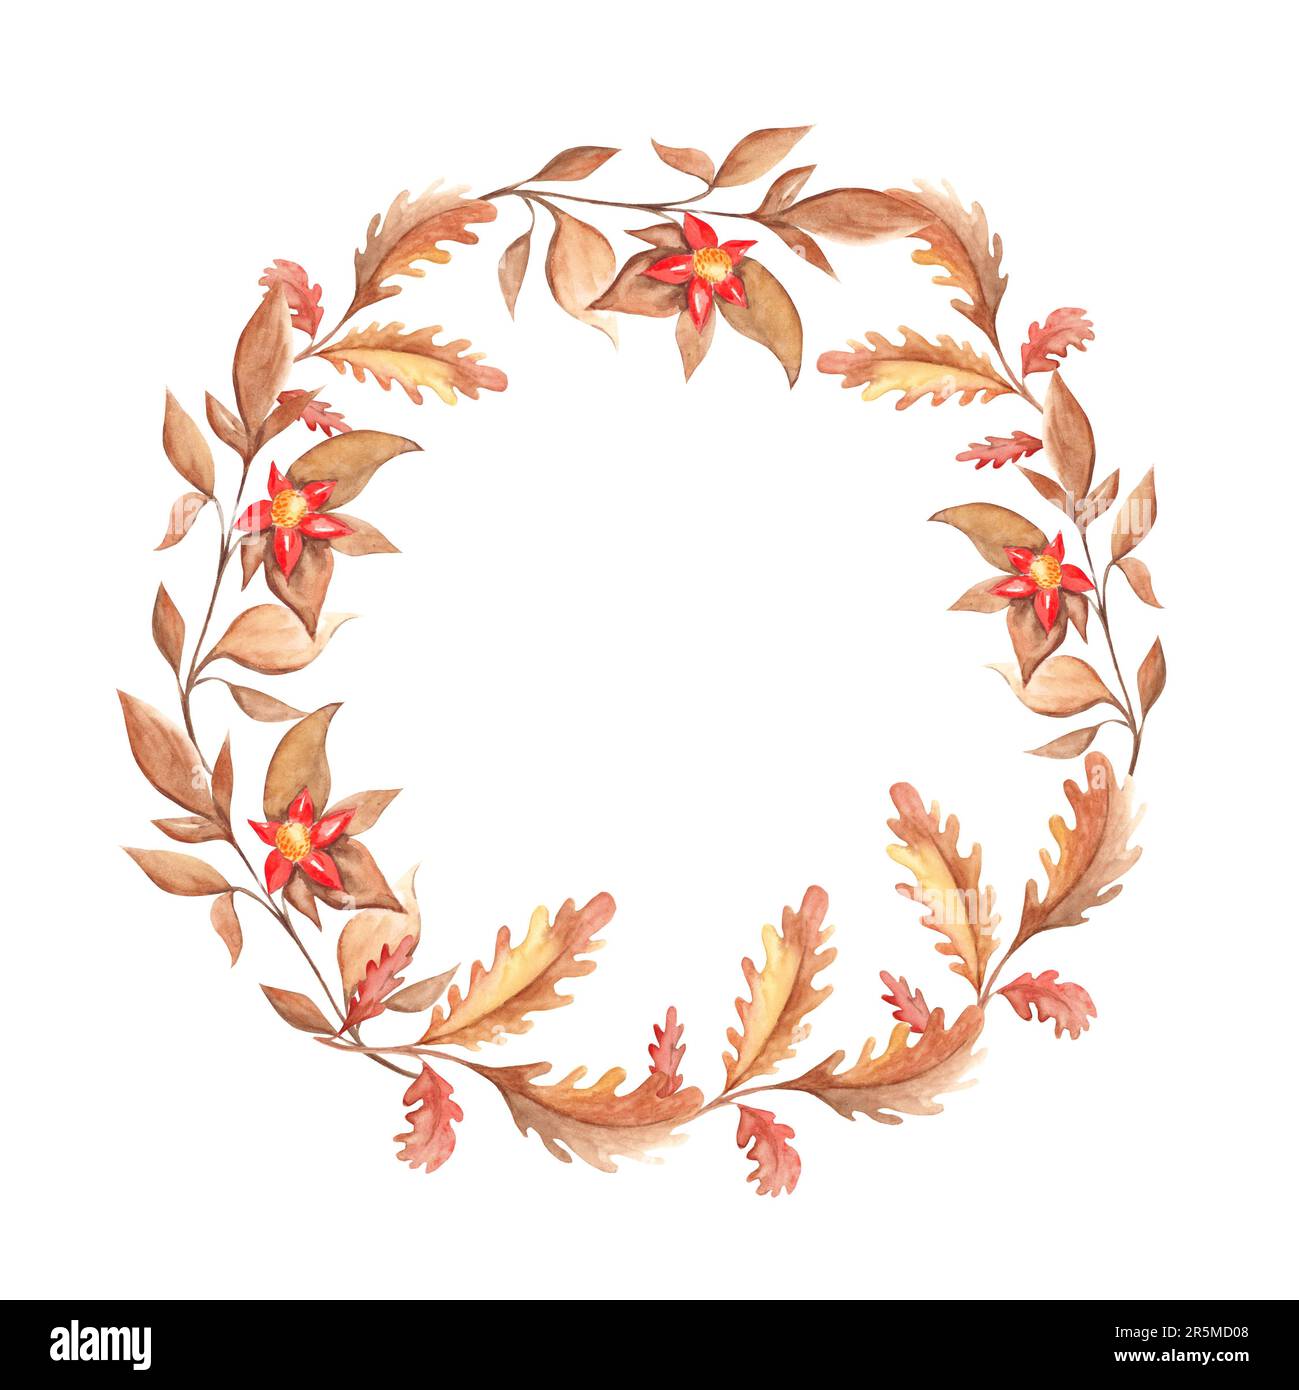 Couronne d'automne aquarelle avec feuilles de chêne, branches et fleurs rouges. Cadre peint à la main sur fond blanc. Illustration florale pour cartes de vœux Banque D'Images